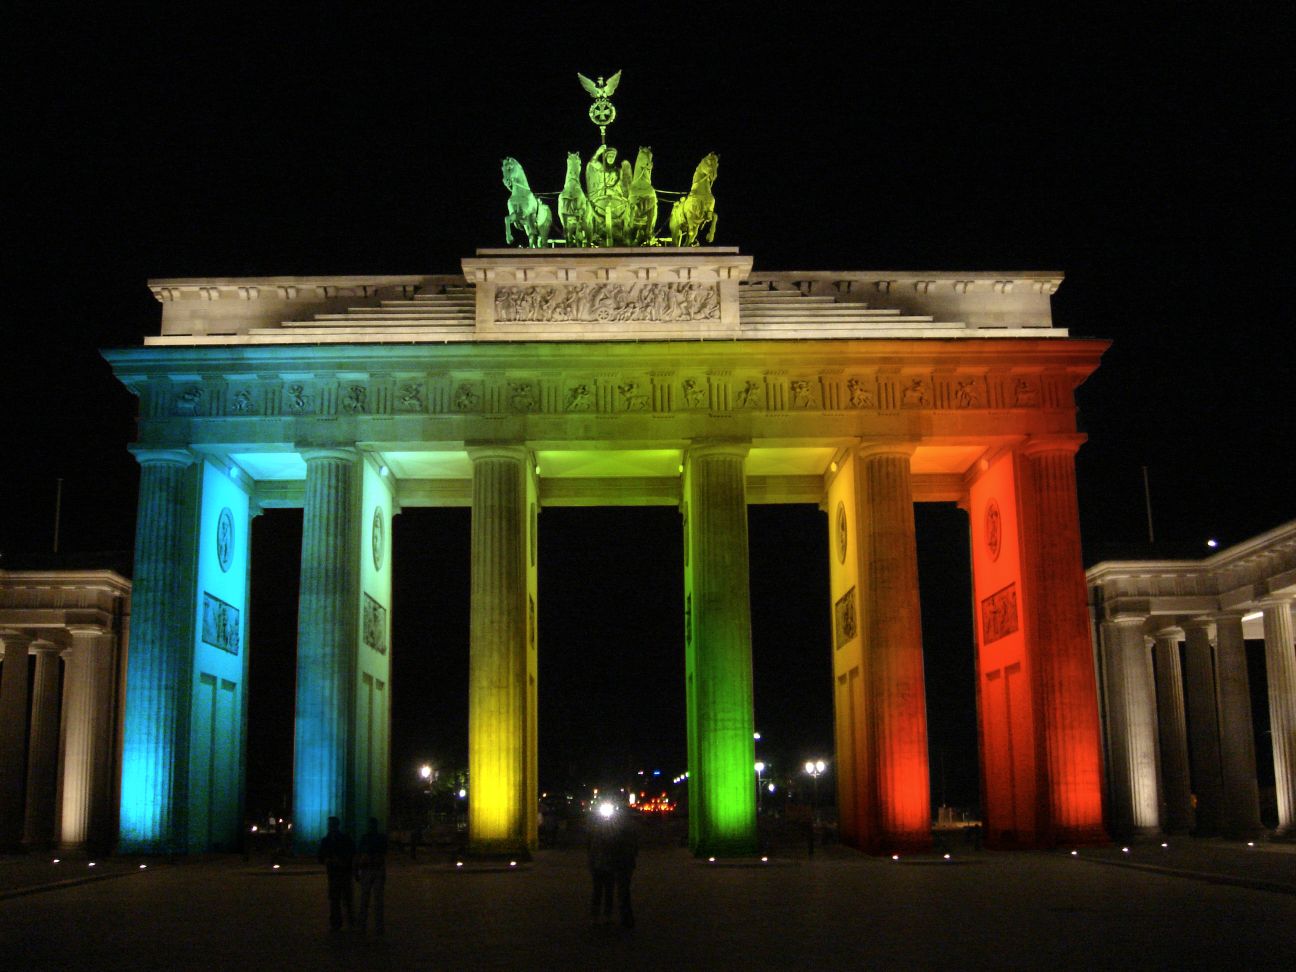 Das Berliner Lichtspektakel beginnt